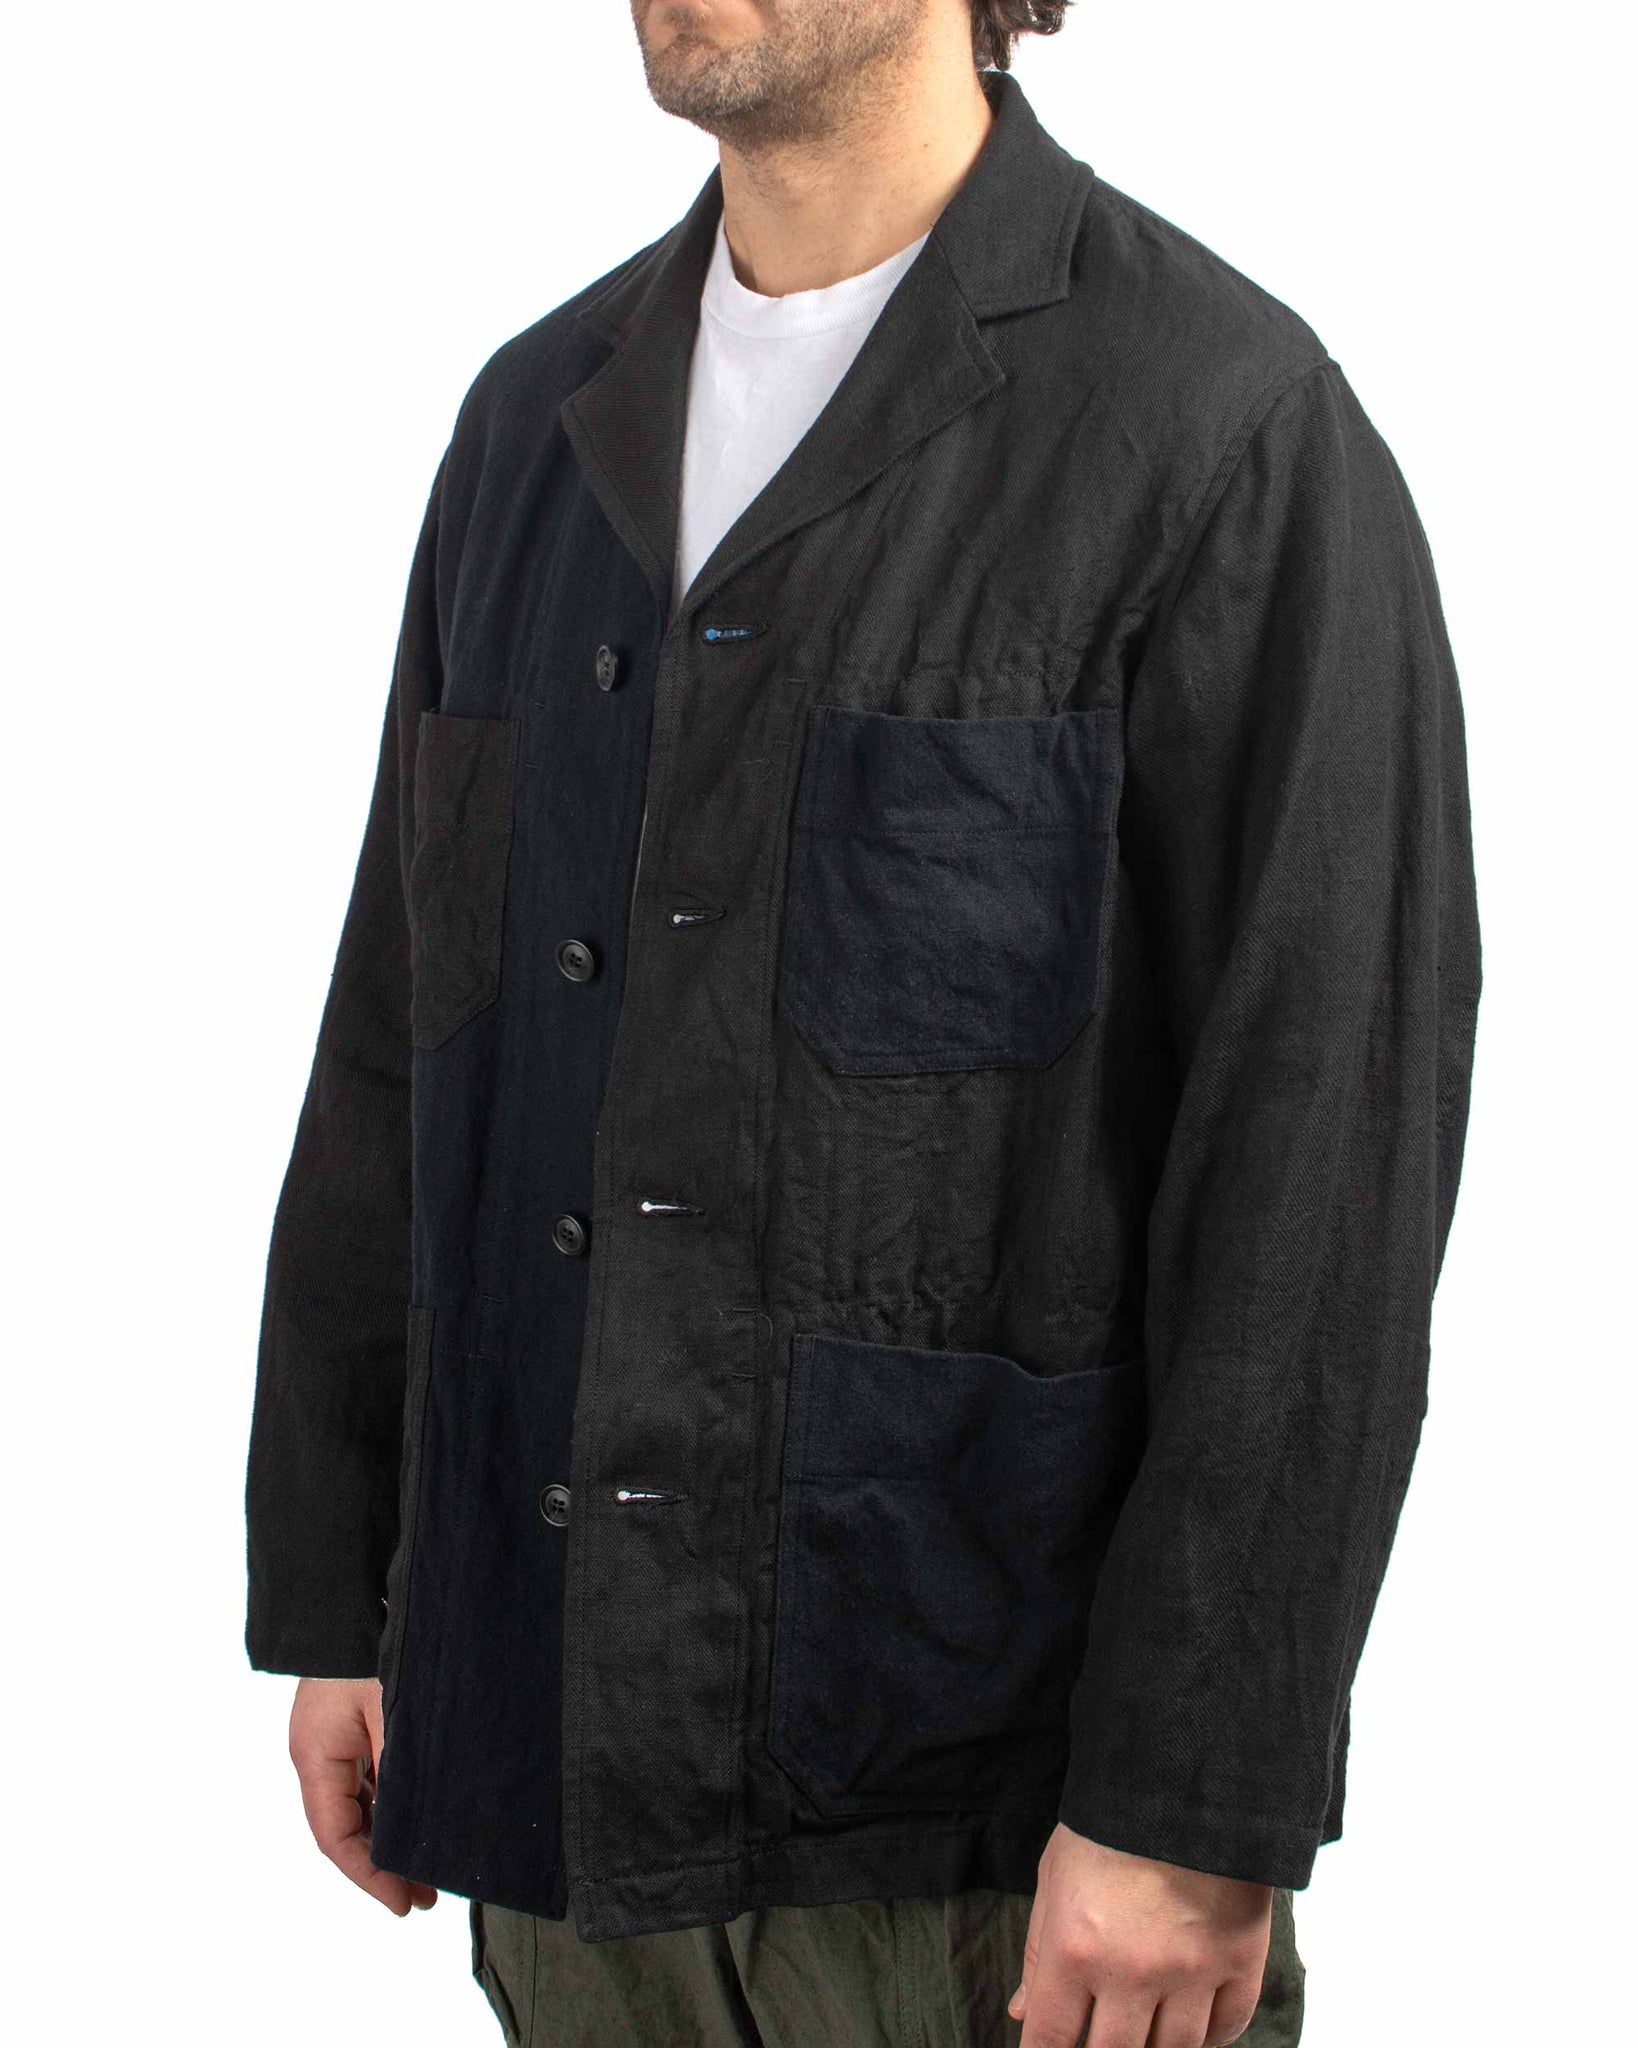 Sage de Cret Patchwork Coverall Jacket Black Linen/Cotton Multi Close